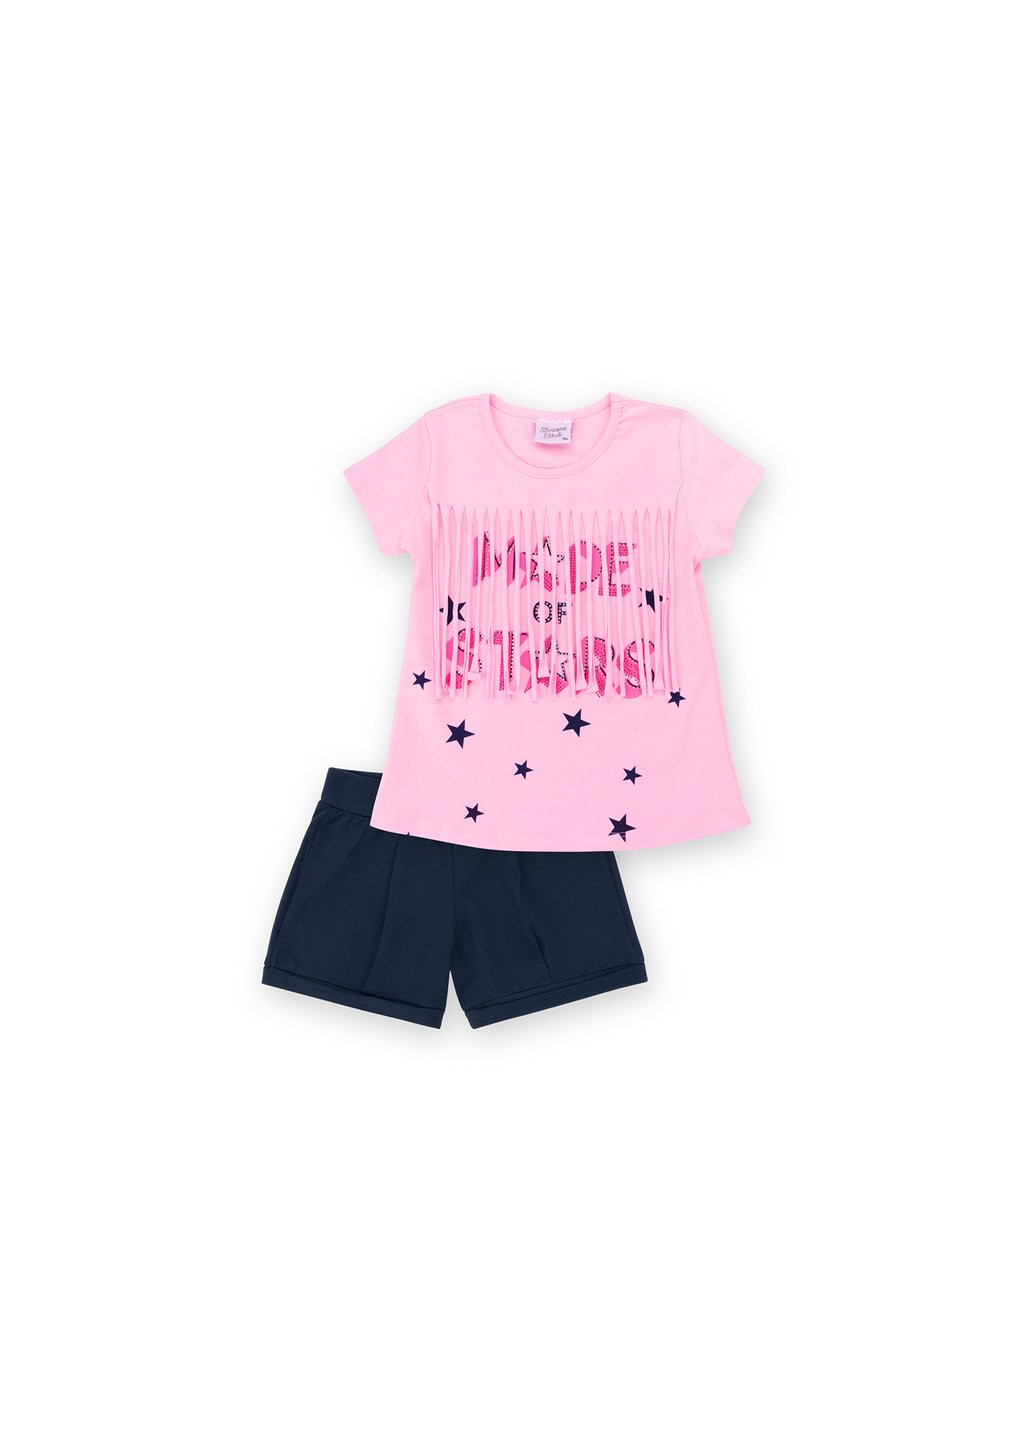 Комбинированный летний набор детской одежды футболка со звездочками с шортами (9036-104g-pink) Breeze